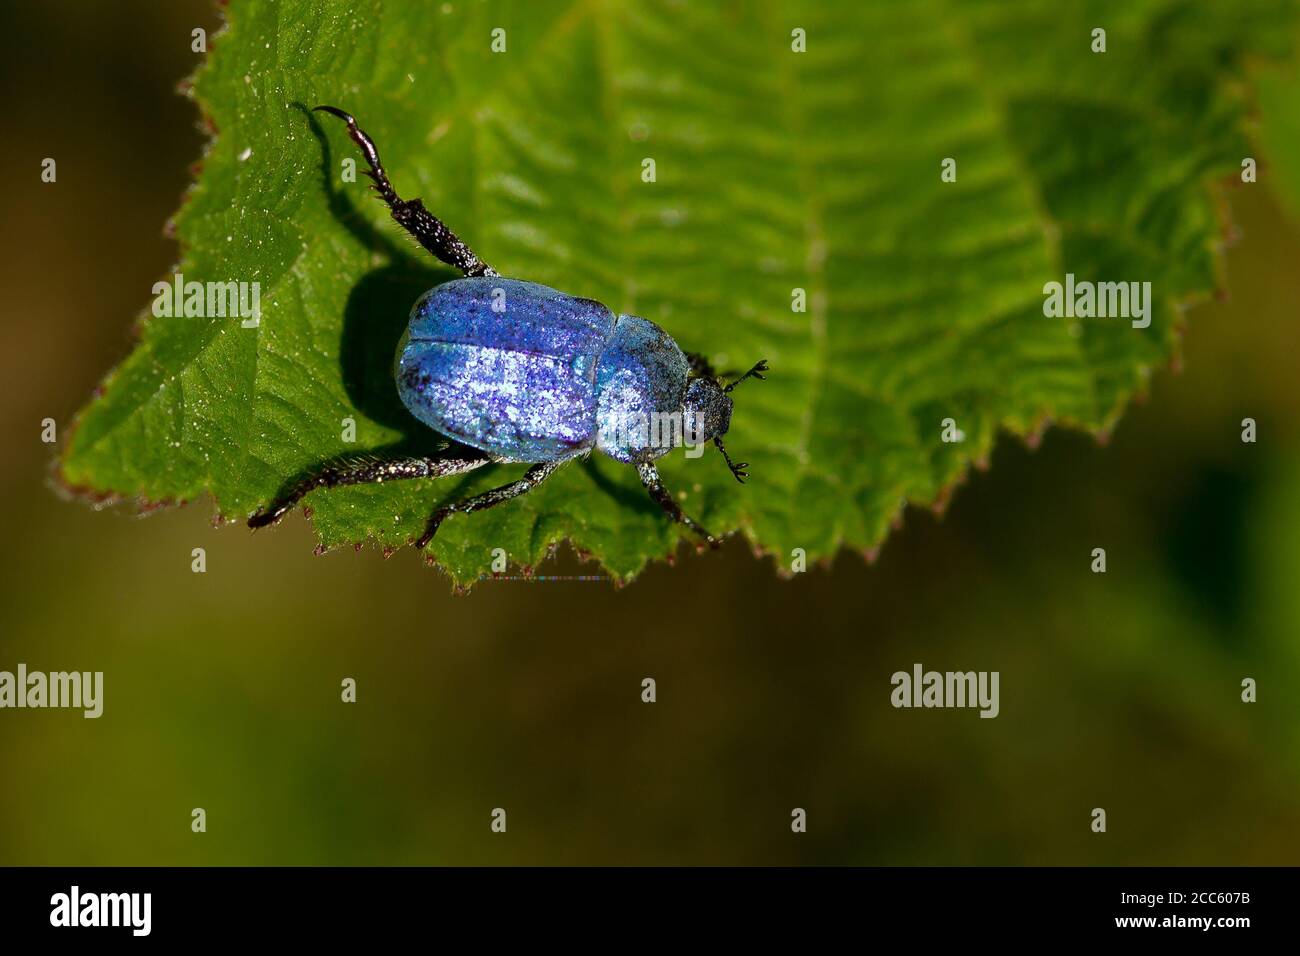 High angle shot of a Hoplia coerulea, blue metalized beetle on the leaf Stock Photo